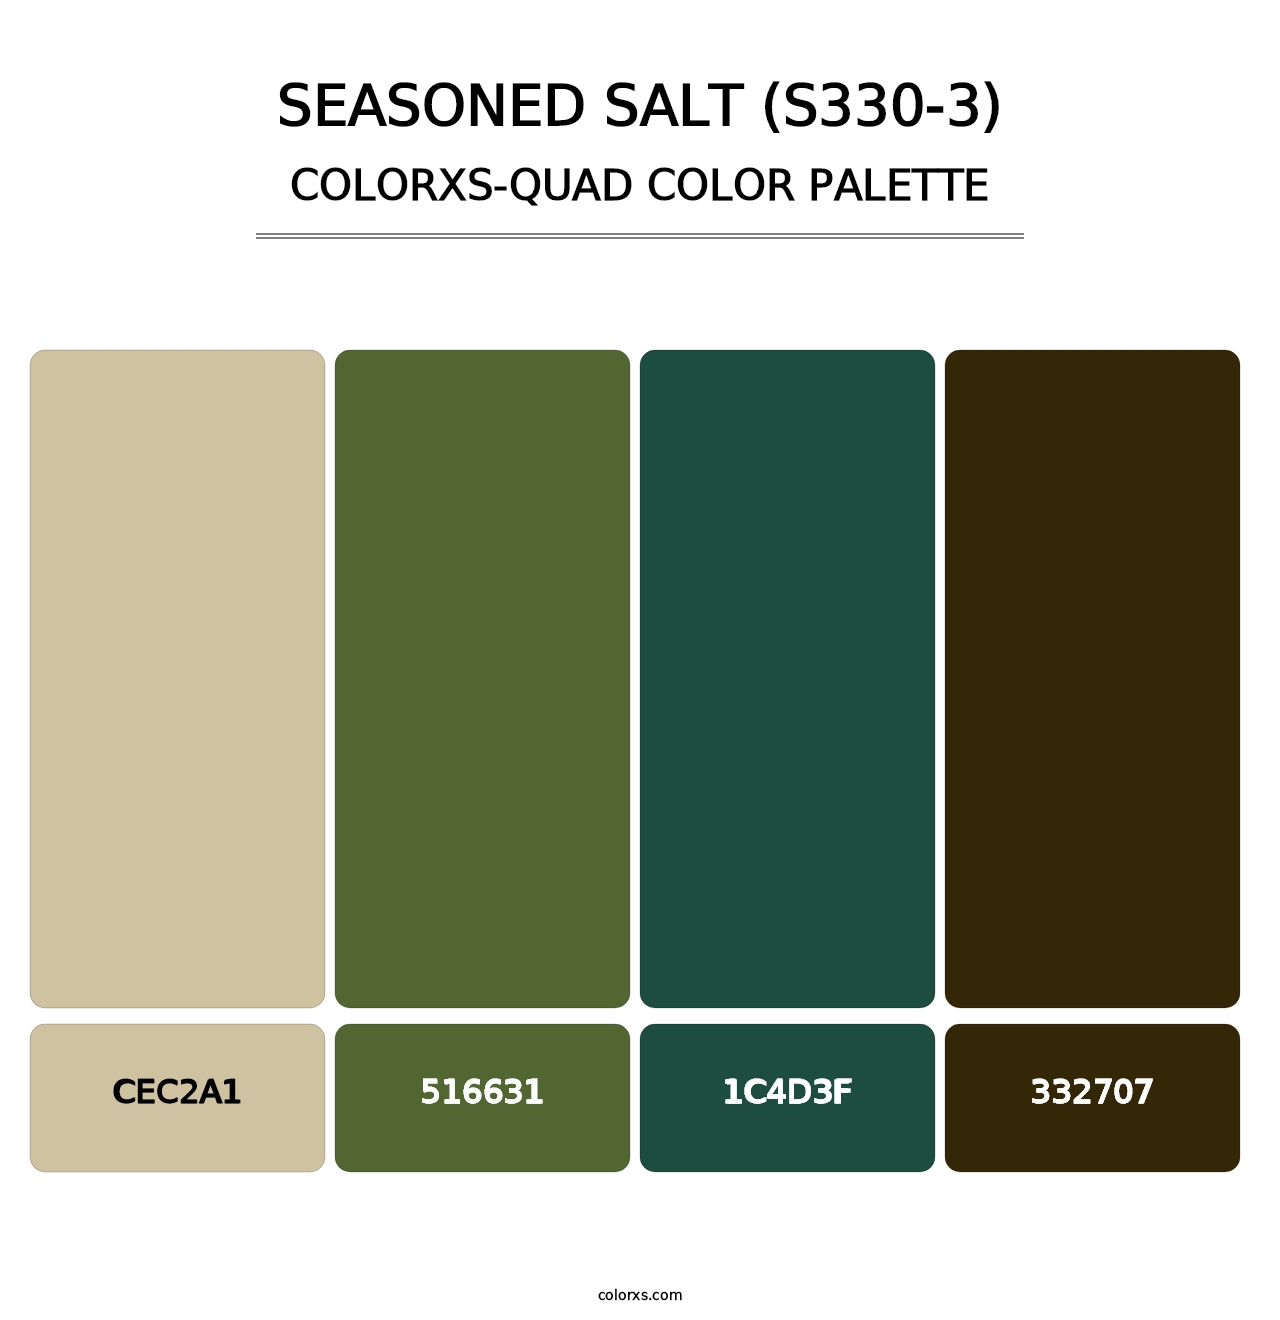 Seasoned Salt (S330-3) - Colorxs Quad Palette